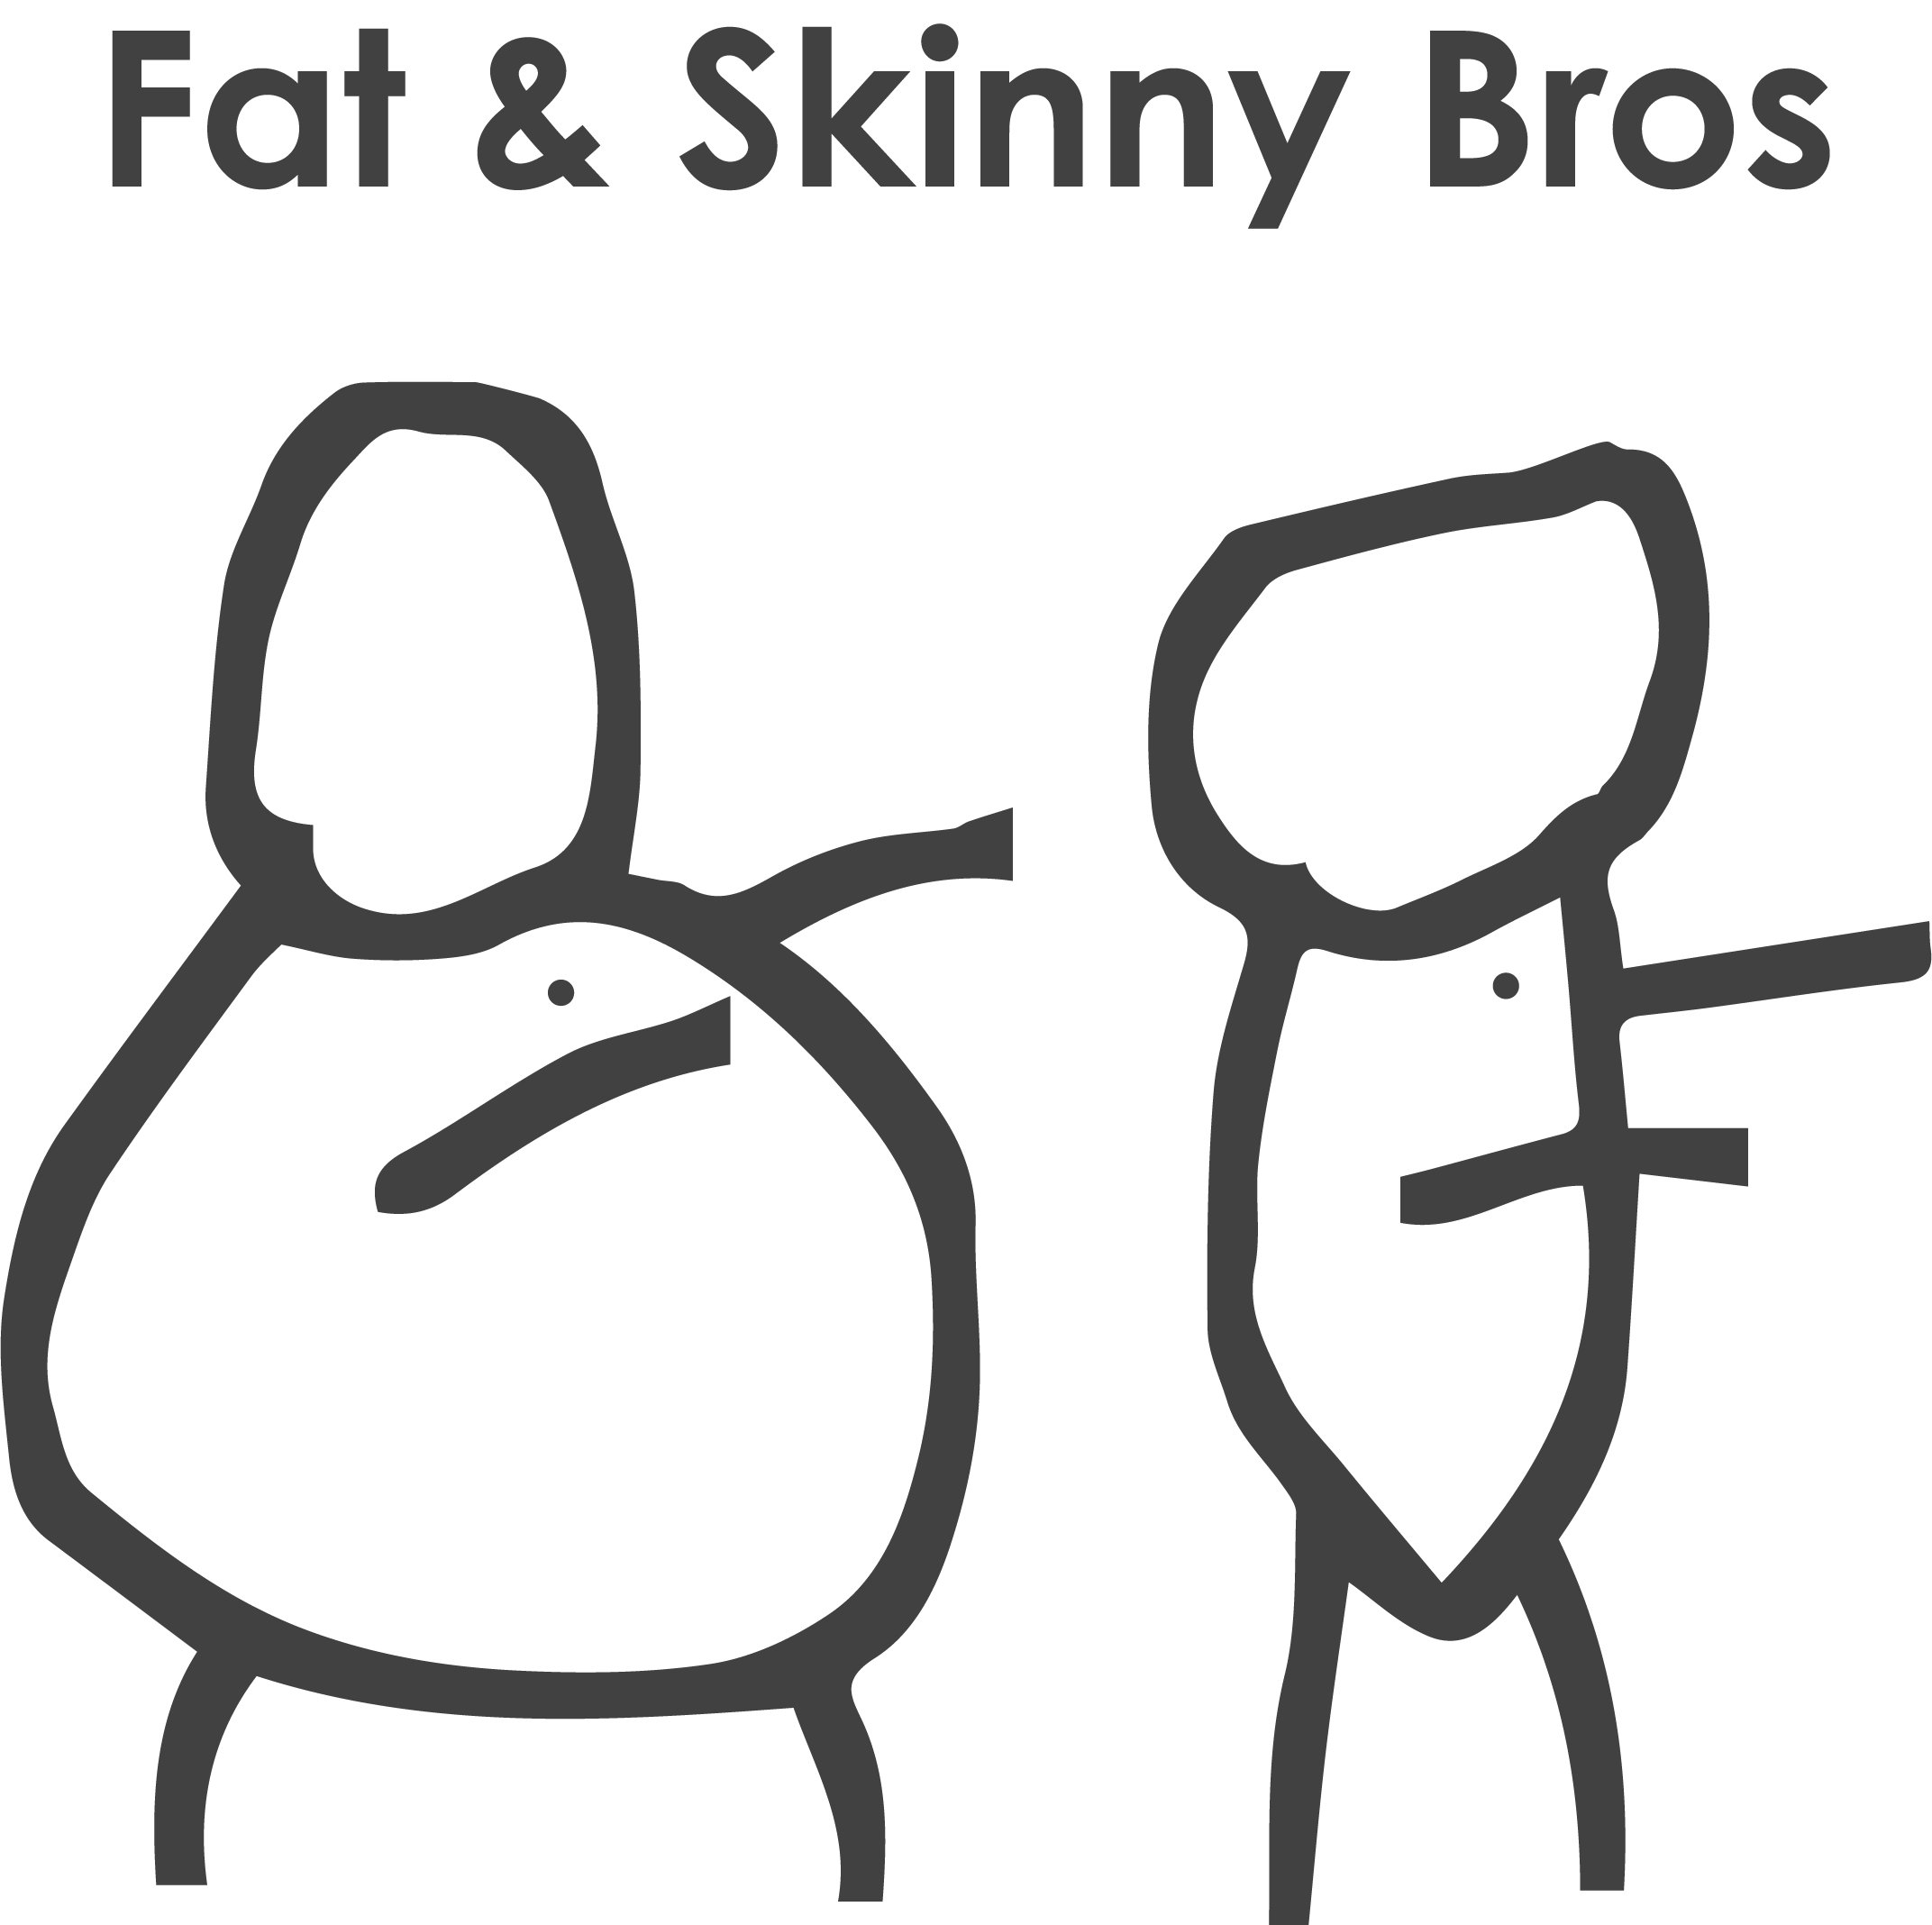 Fat & Skinny Bros